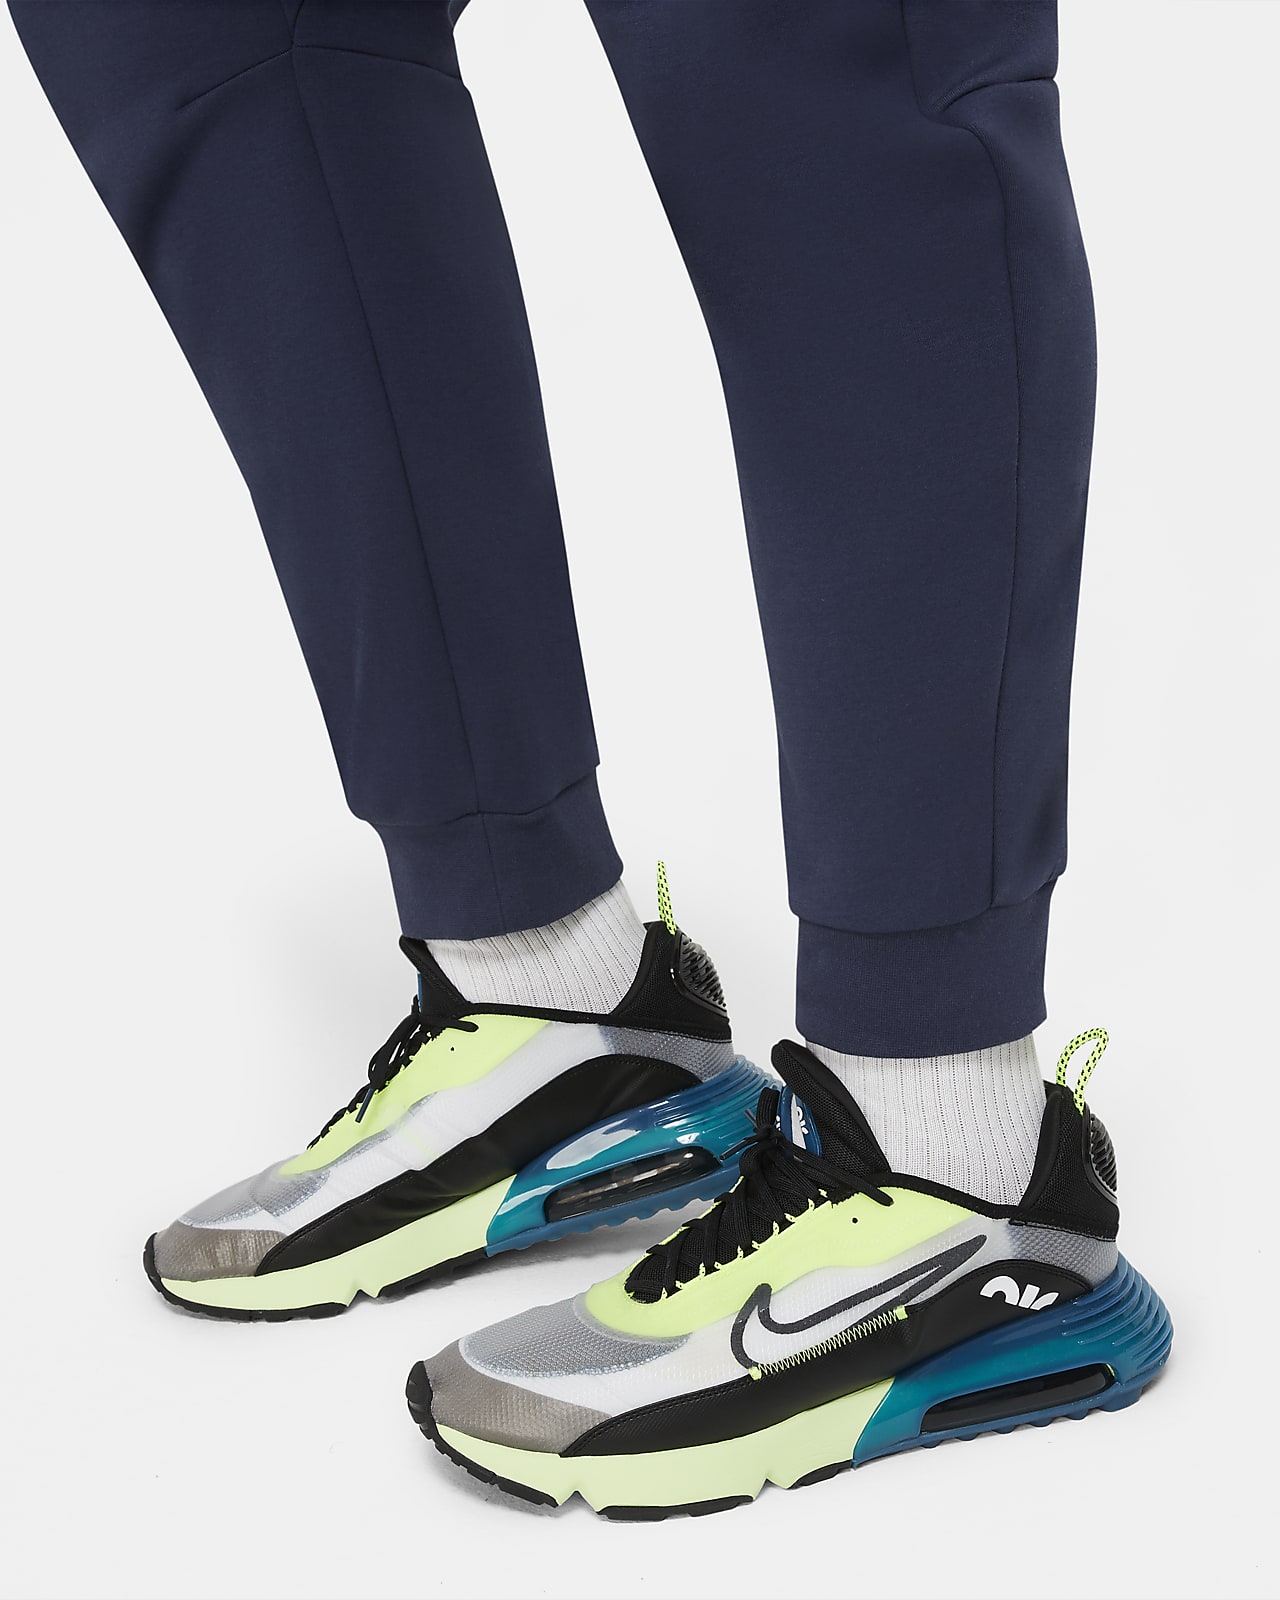 Nike Men's Sportswear Tech Fleece Joggers Green Camo Pants CJ5981 222 Small  S